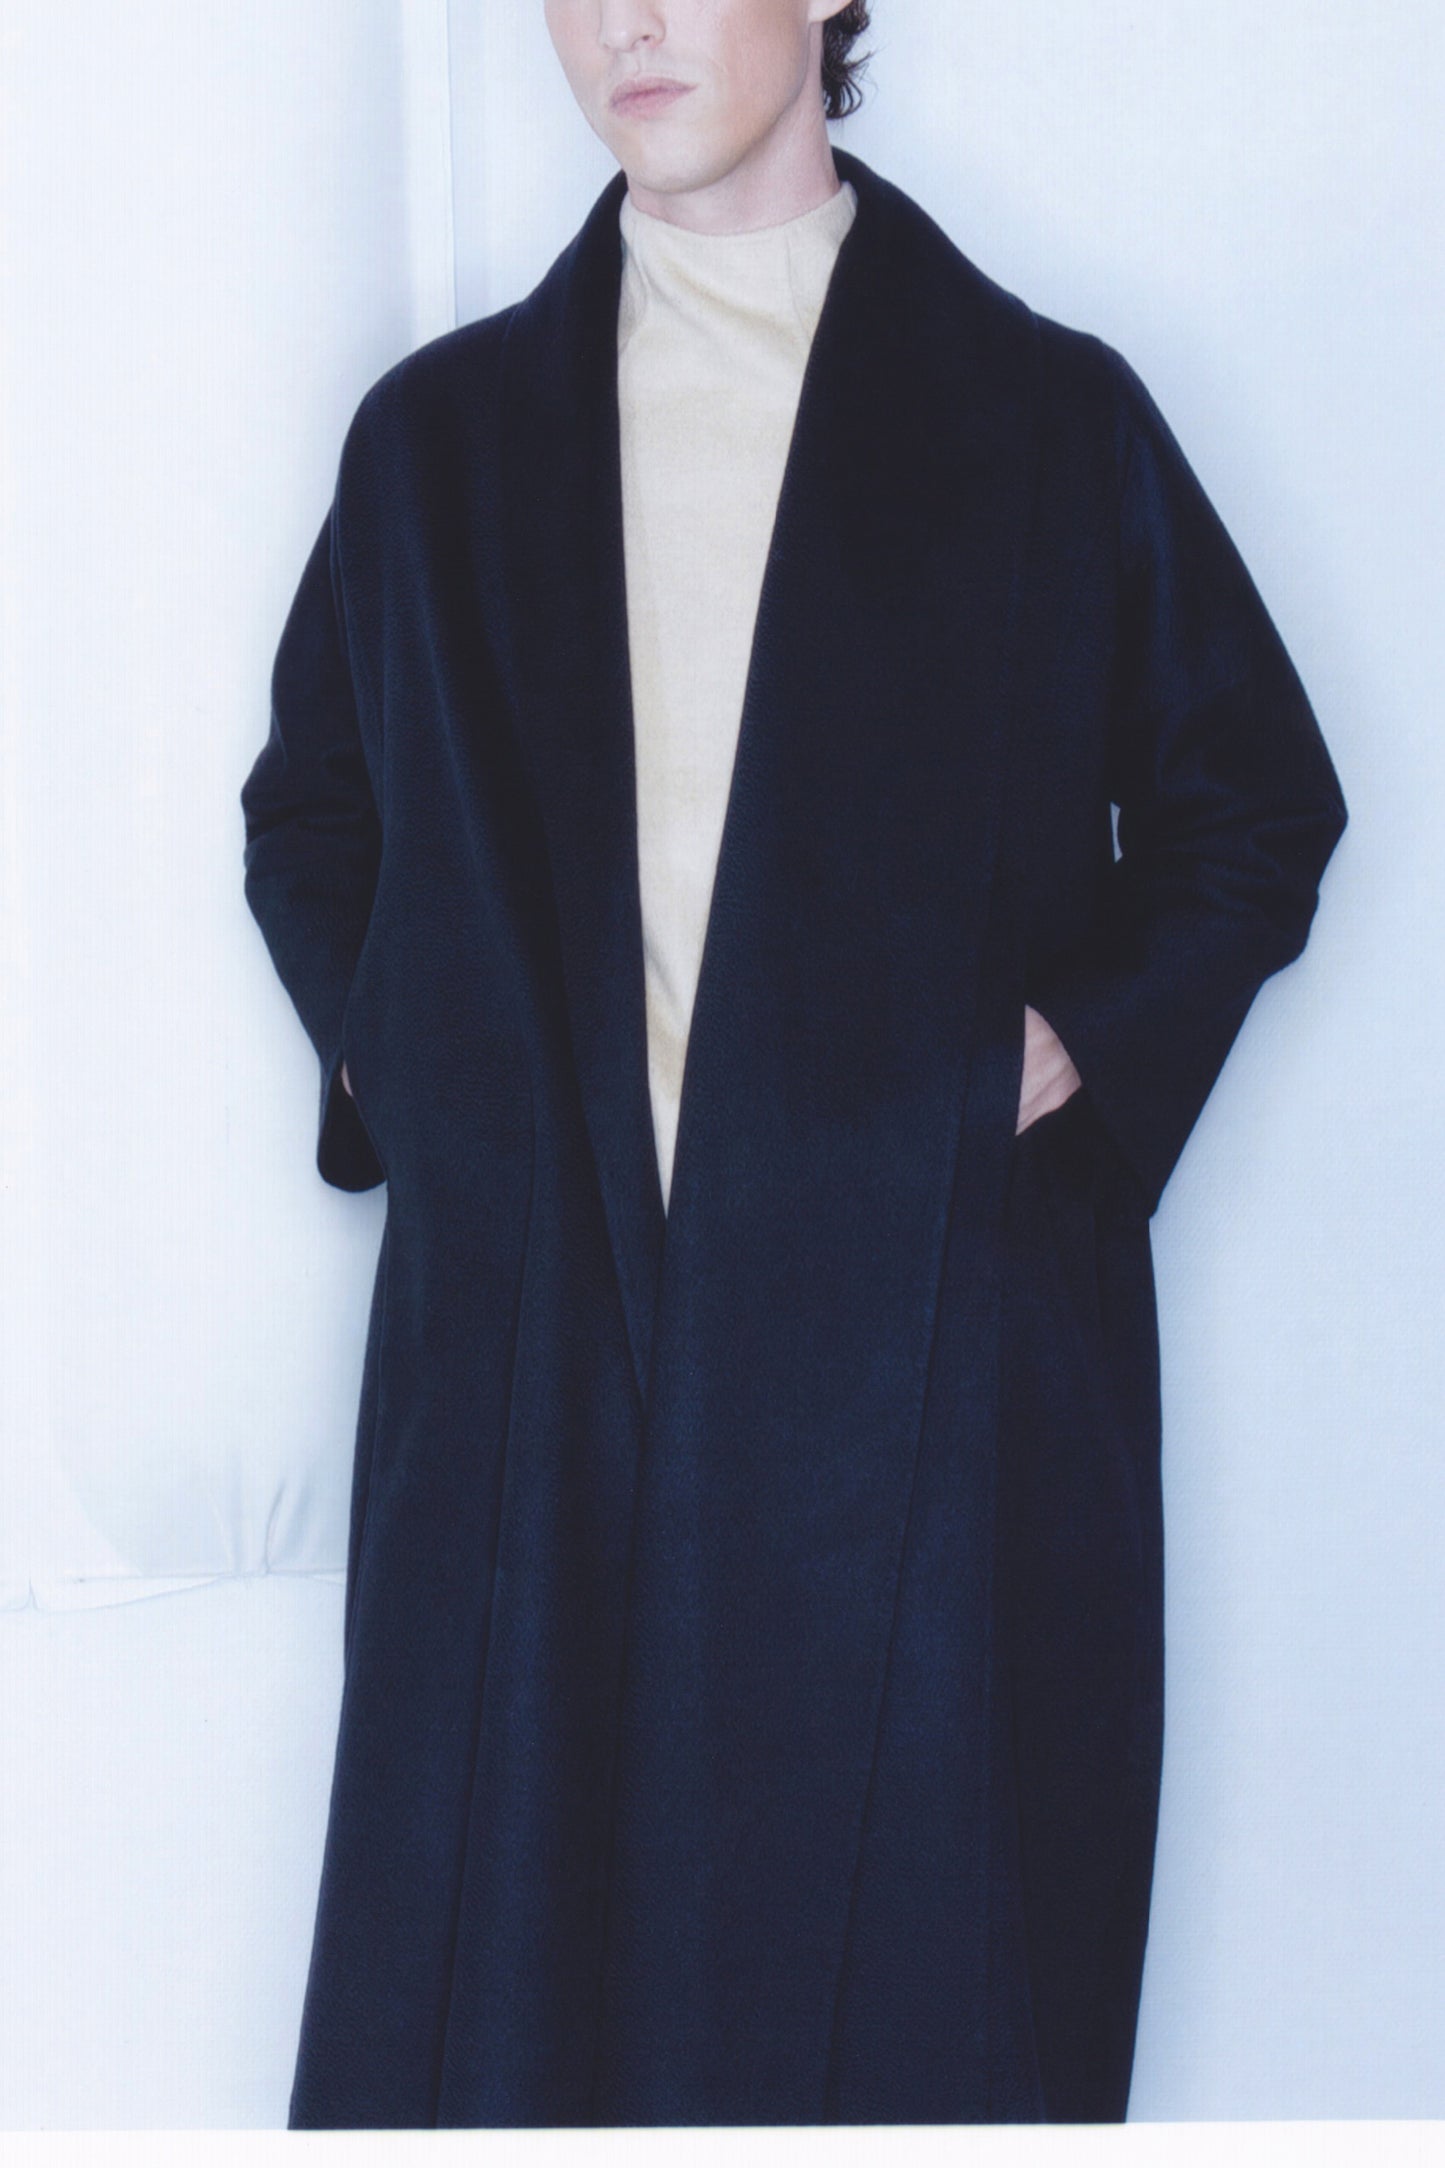 Black double face 100% cashmere coat